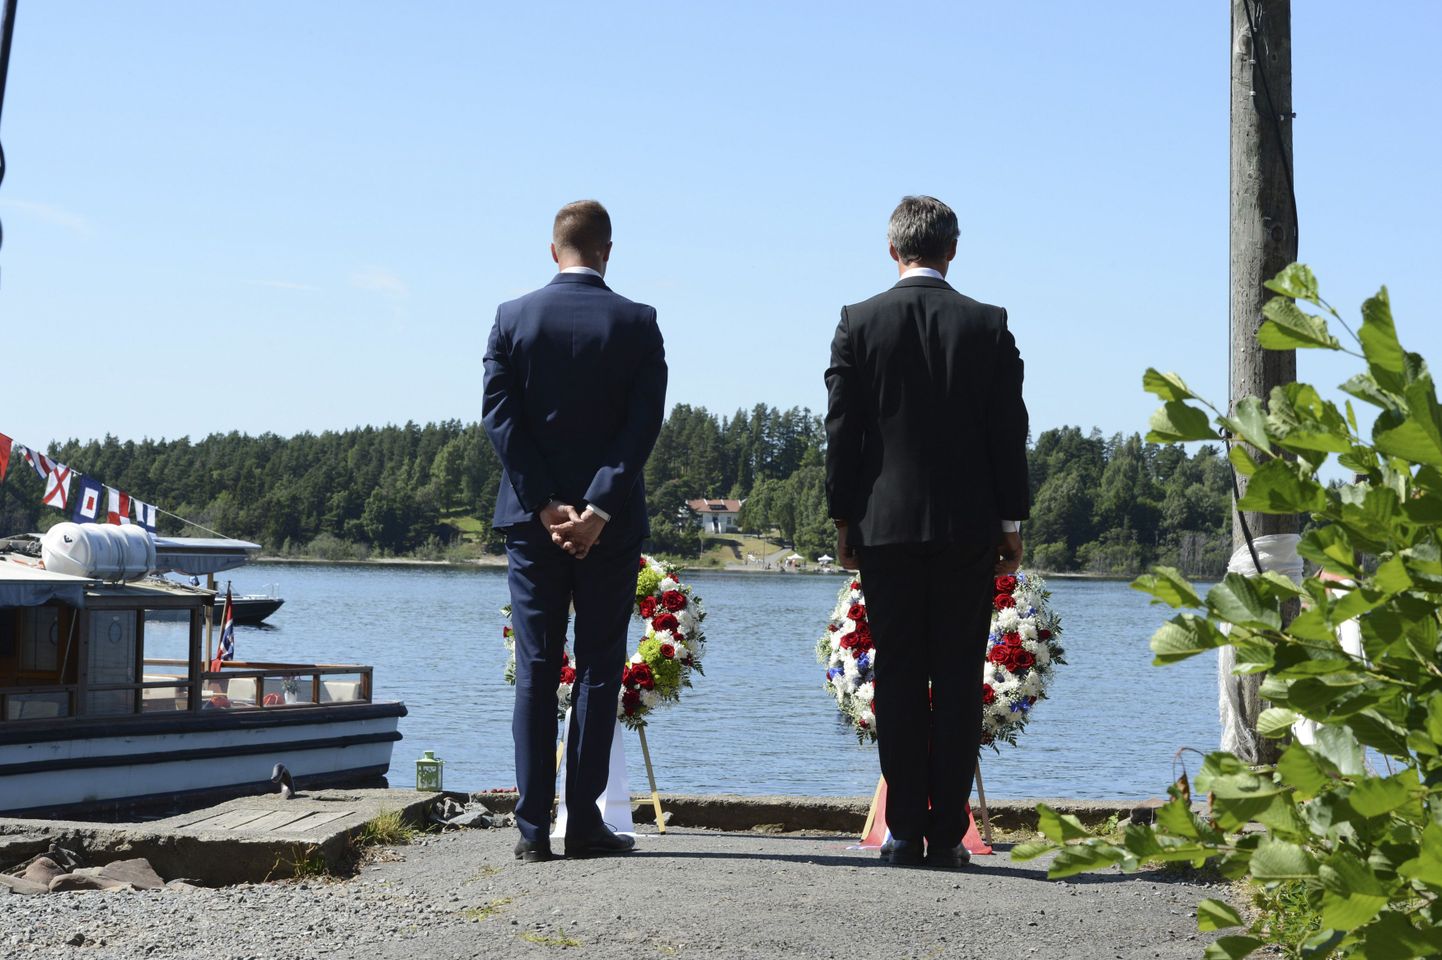 Norra tööerakonna noorteorganisatsiooni juht Eskil Pedersen (vasakul)ja peaministri koha kaotanud tööerakondlane Jens Stoltenberg Breiviki veresauna ohvreid mälestamas.